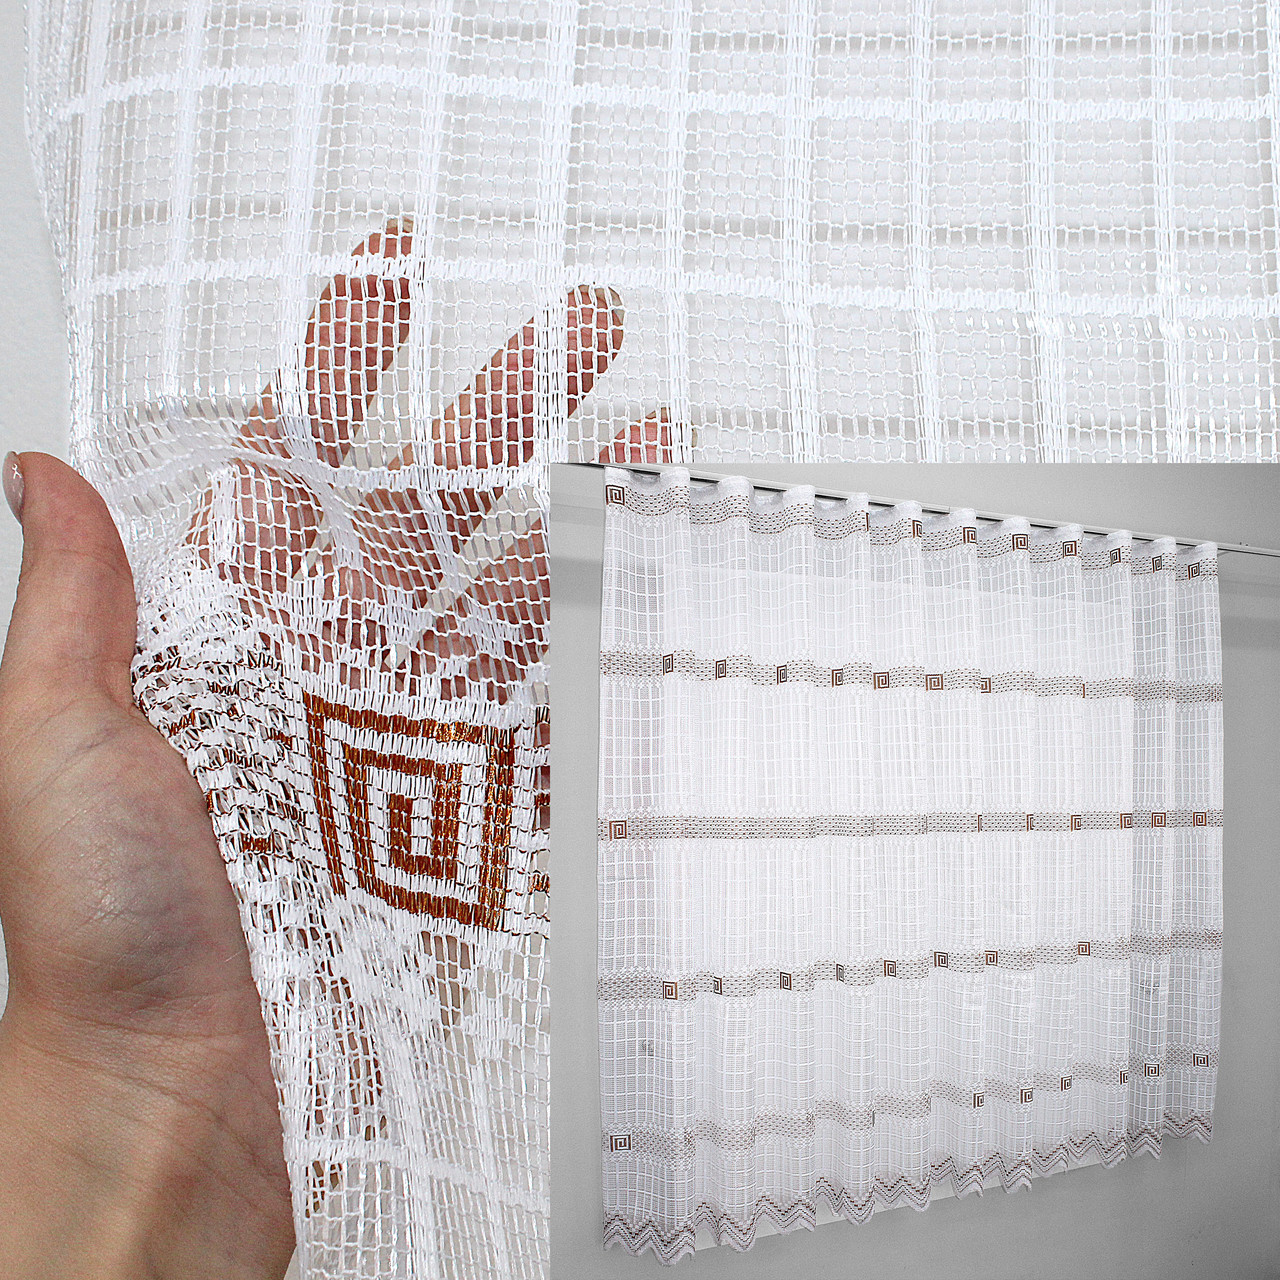 Залишок (1,9х1,5 м.) тканини з рулона, тюль сітка, "Juli". Колір білий з коричневим. Код 1231ту 00-407, фото 1